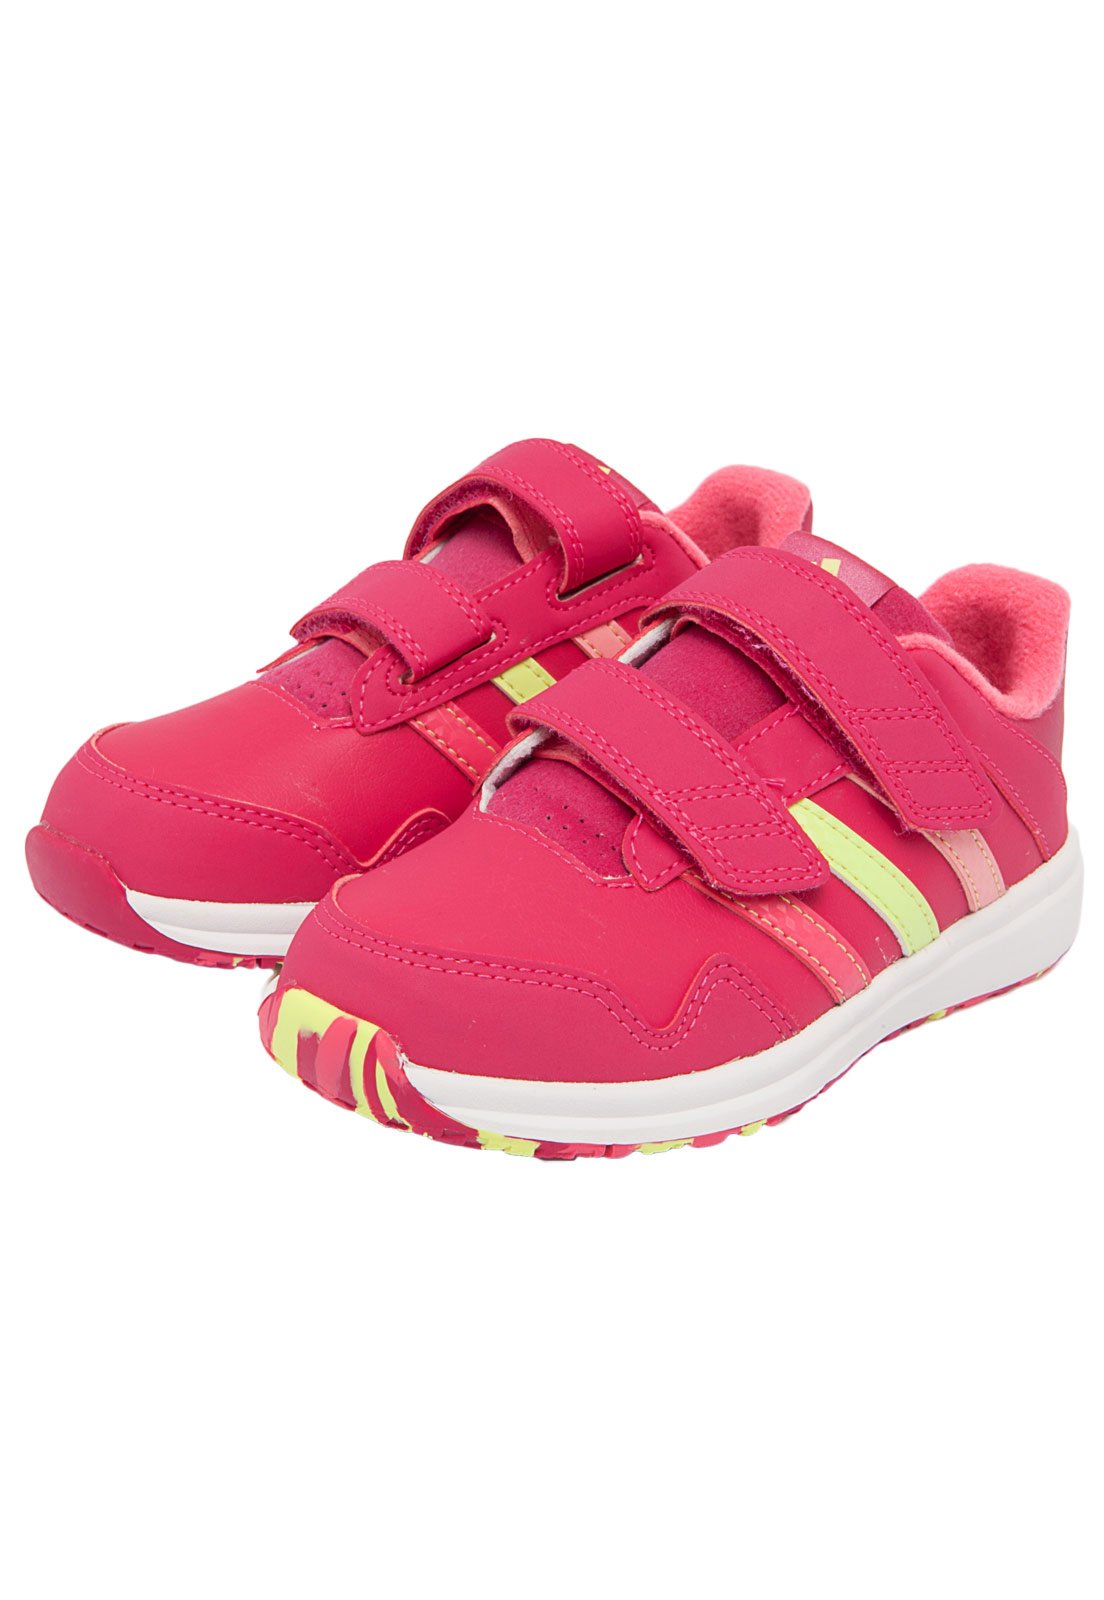 Tênis adidas Infantil Snice 4 Rosa Compre Agora | Kanui